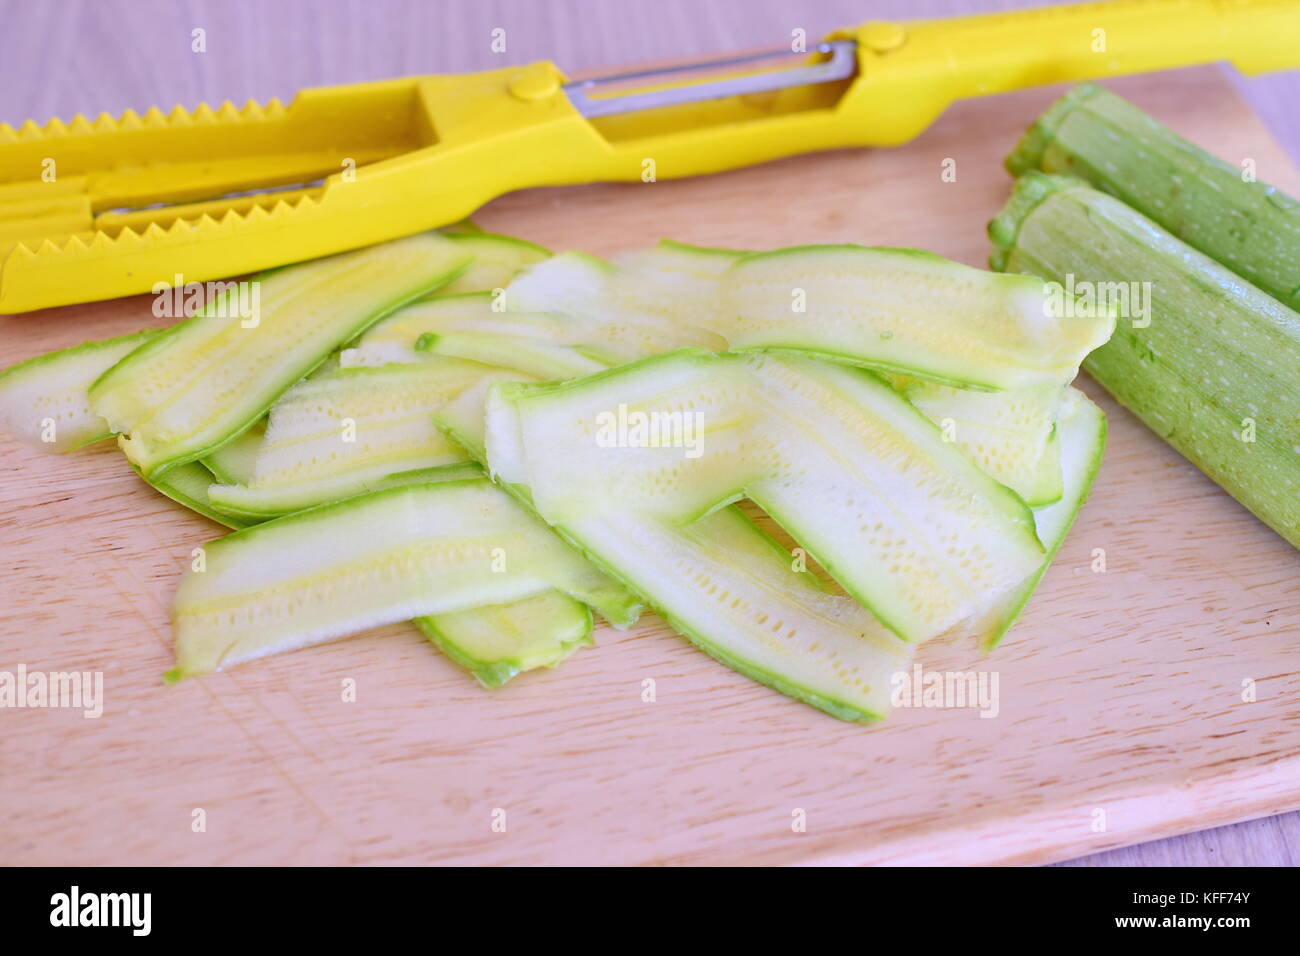 https://c8.alamy.com/comp/KFF74Y/fresh-zucchini-sliced-with-a-slicer-on-a-wooden-cutting-board-step-KFF74Y.jpg